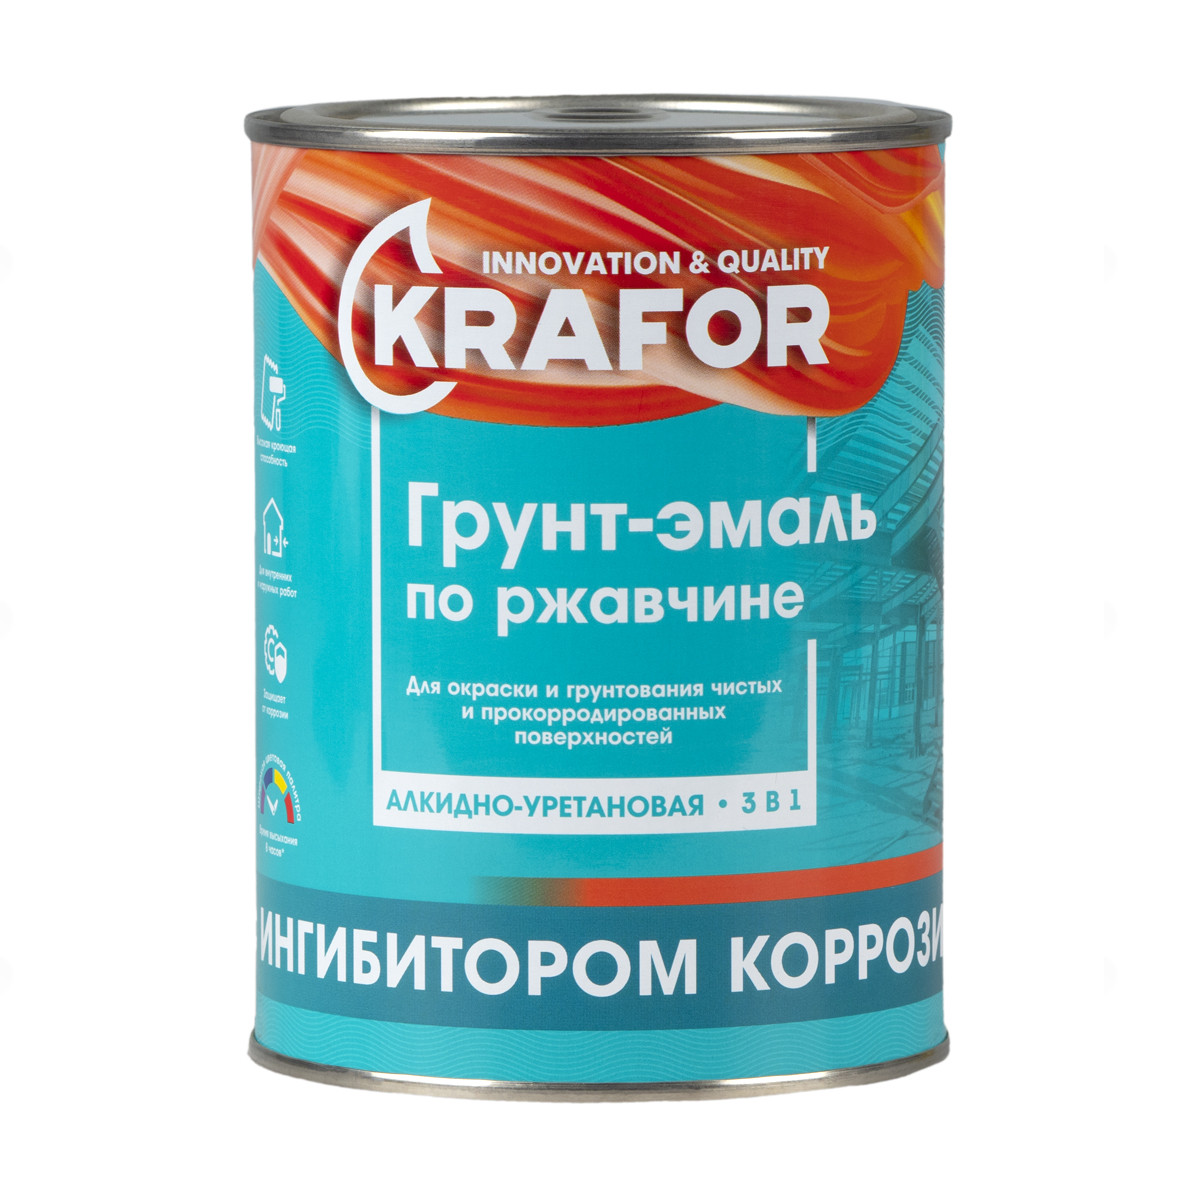 Купить KRAFOR Грунт-эмаль по ржавчине шоколадная 1 кг 14 26698